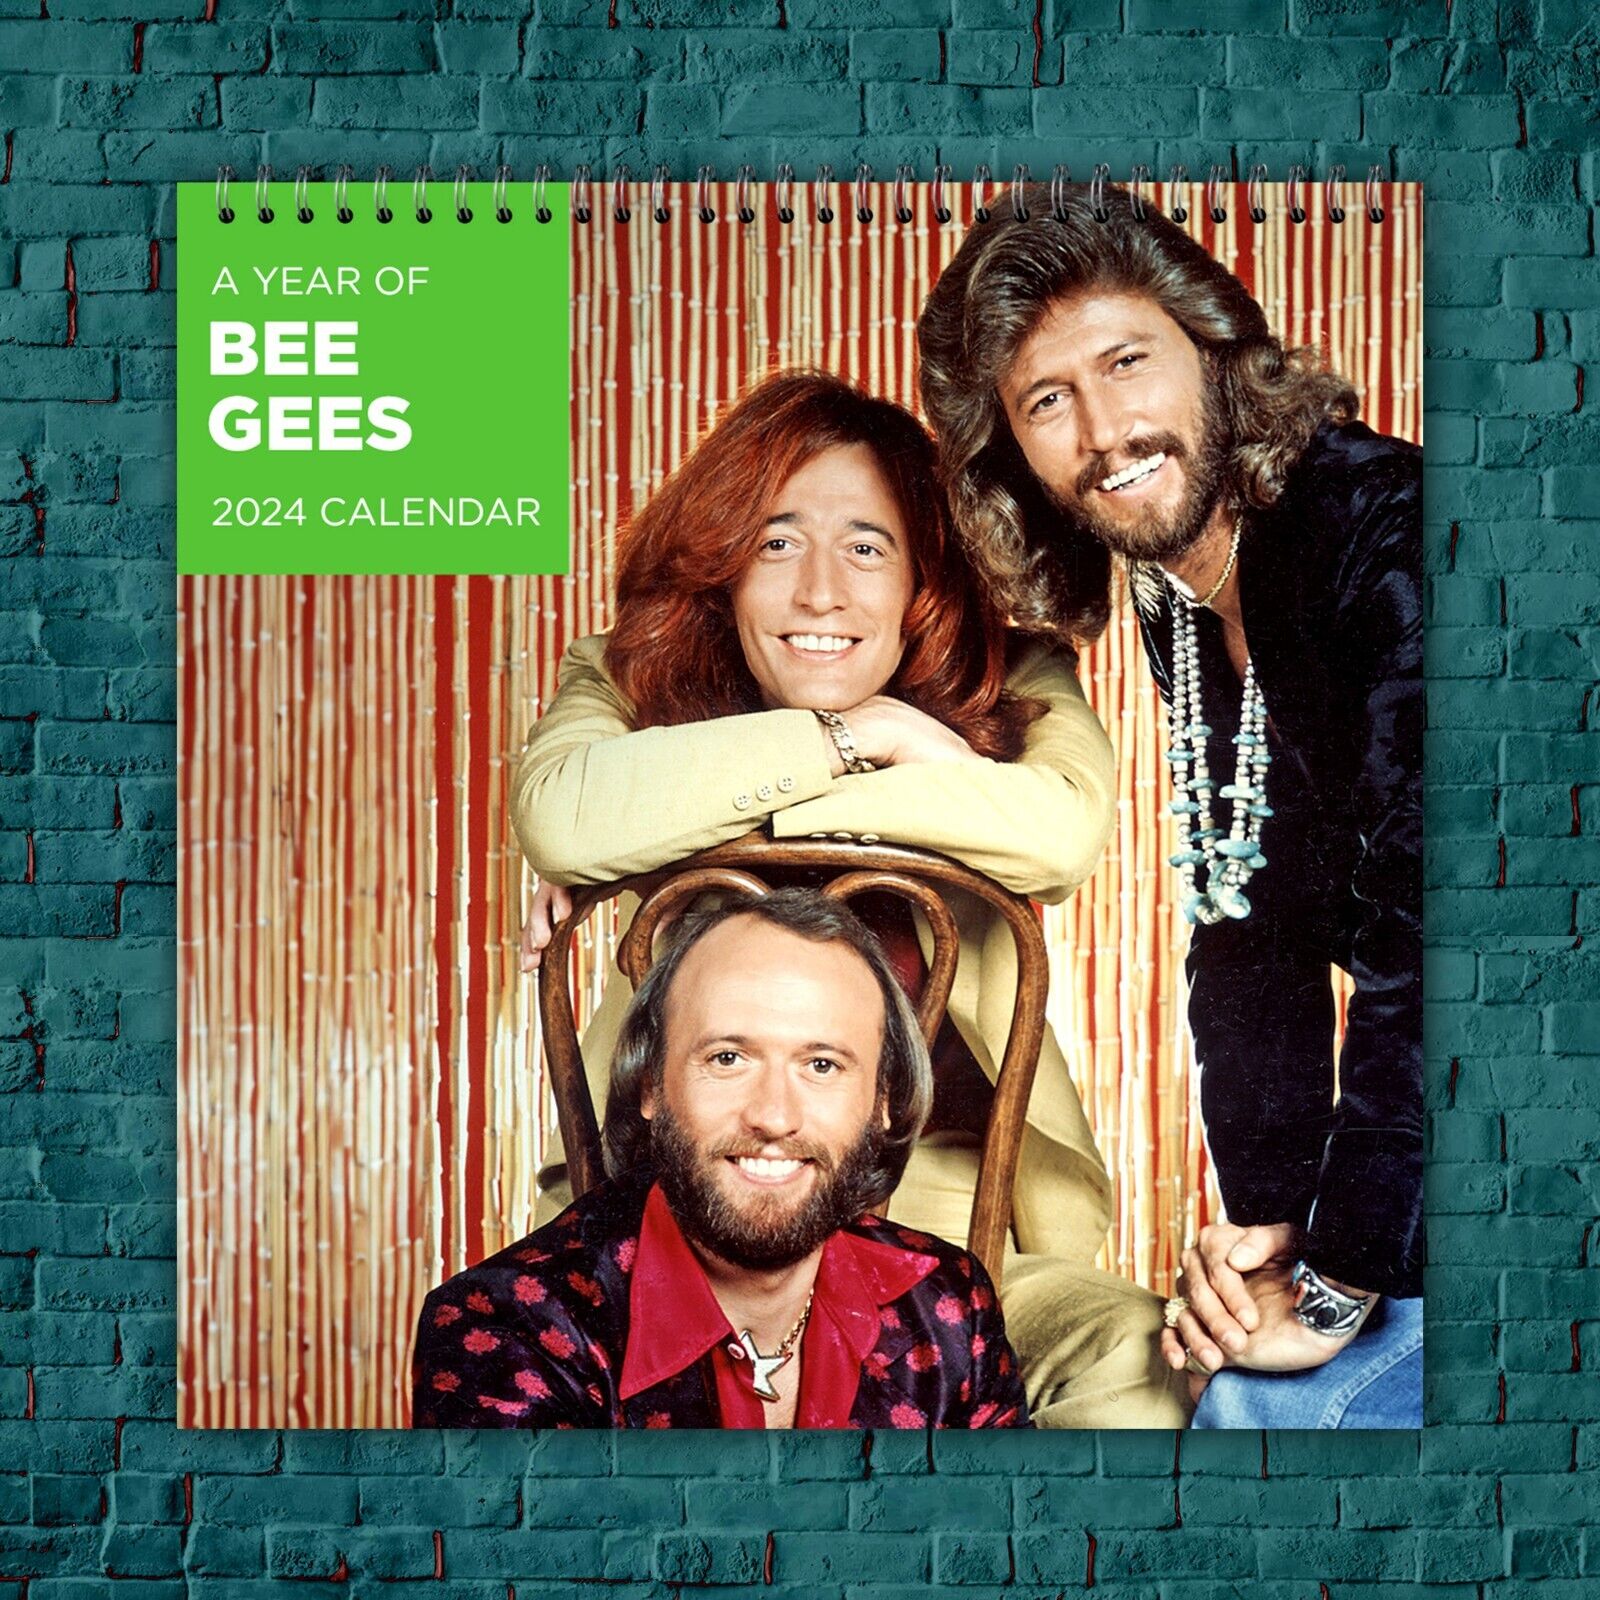 Bee Gees Calendar 2024 | Bee Gees 2024 Celebrity Wall Calendar, Calendar Gifts